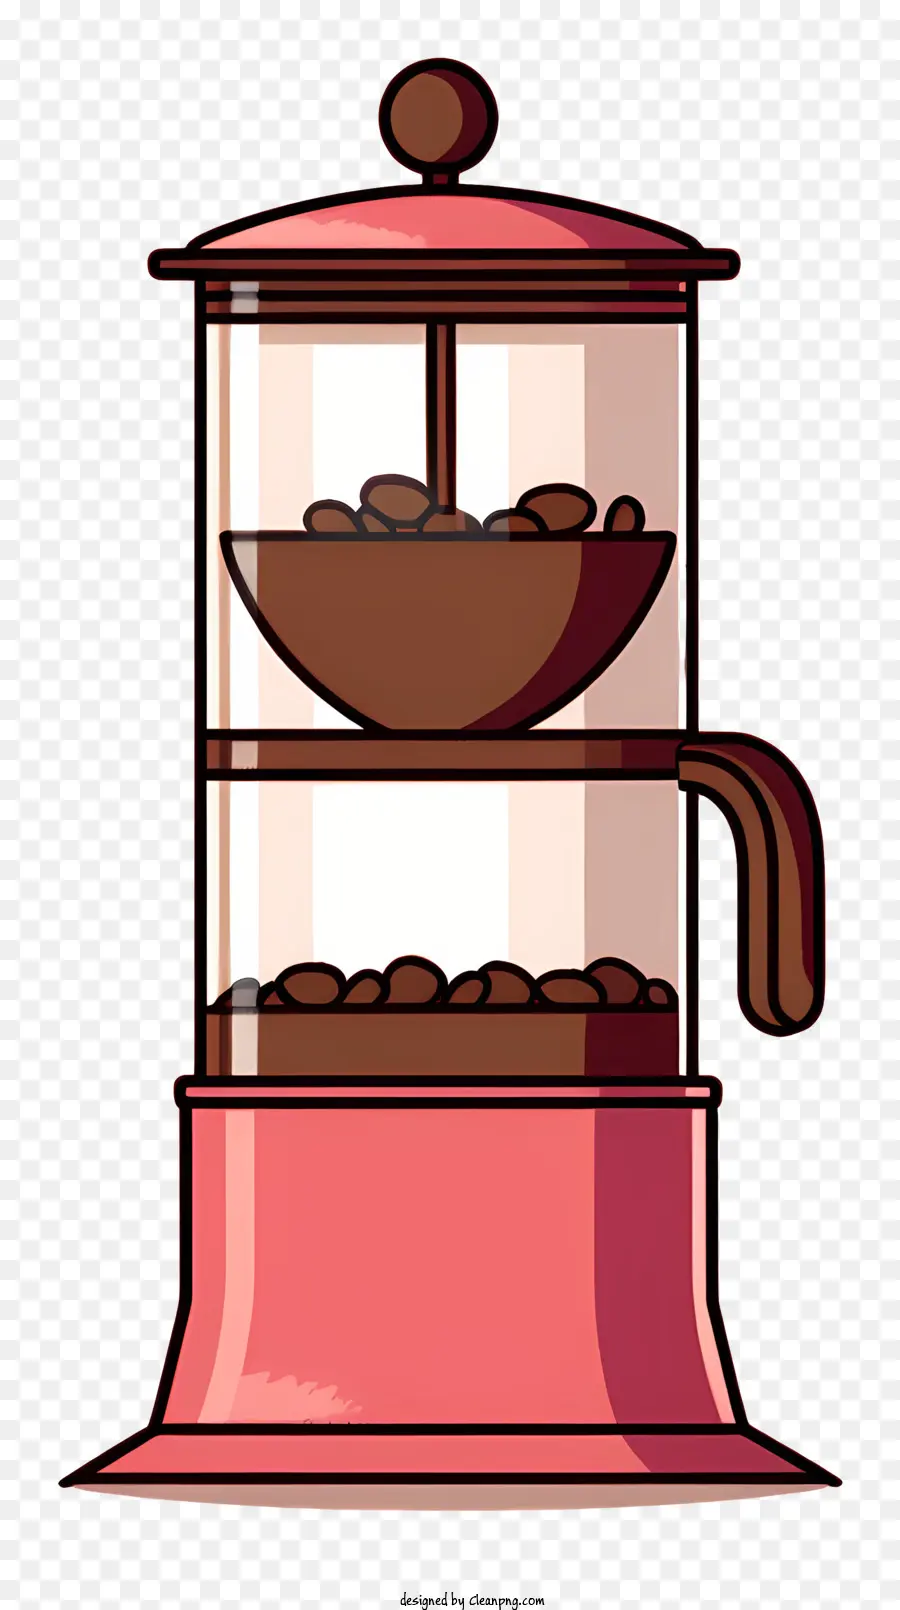 Máy pha cà phê màu hồng kim loại hàng đầu bằng gỗ cơ sở - Máy pha cà phê màu hồng với đầu thủy tinh và đế gỗ